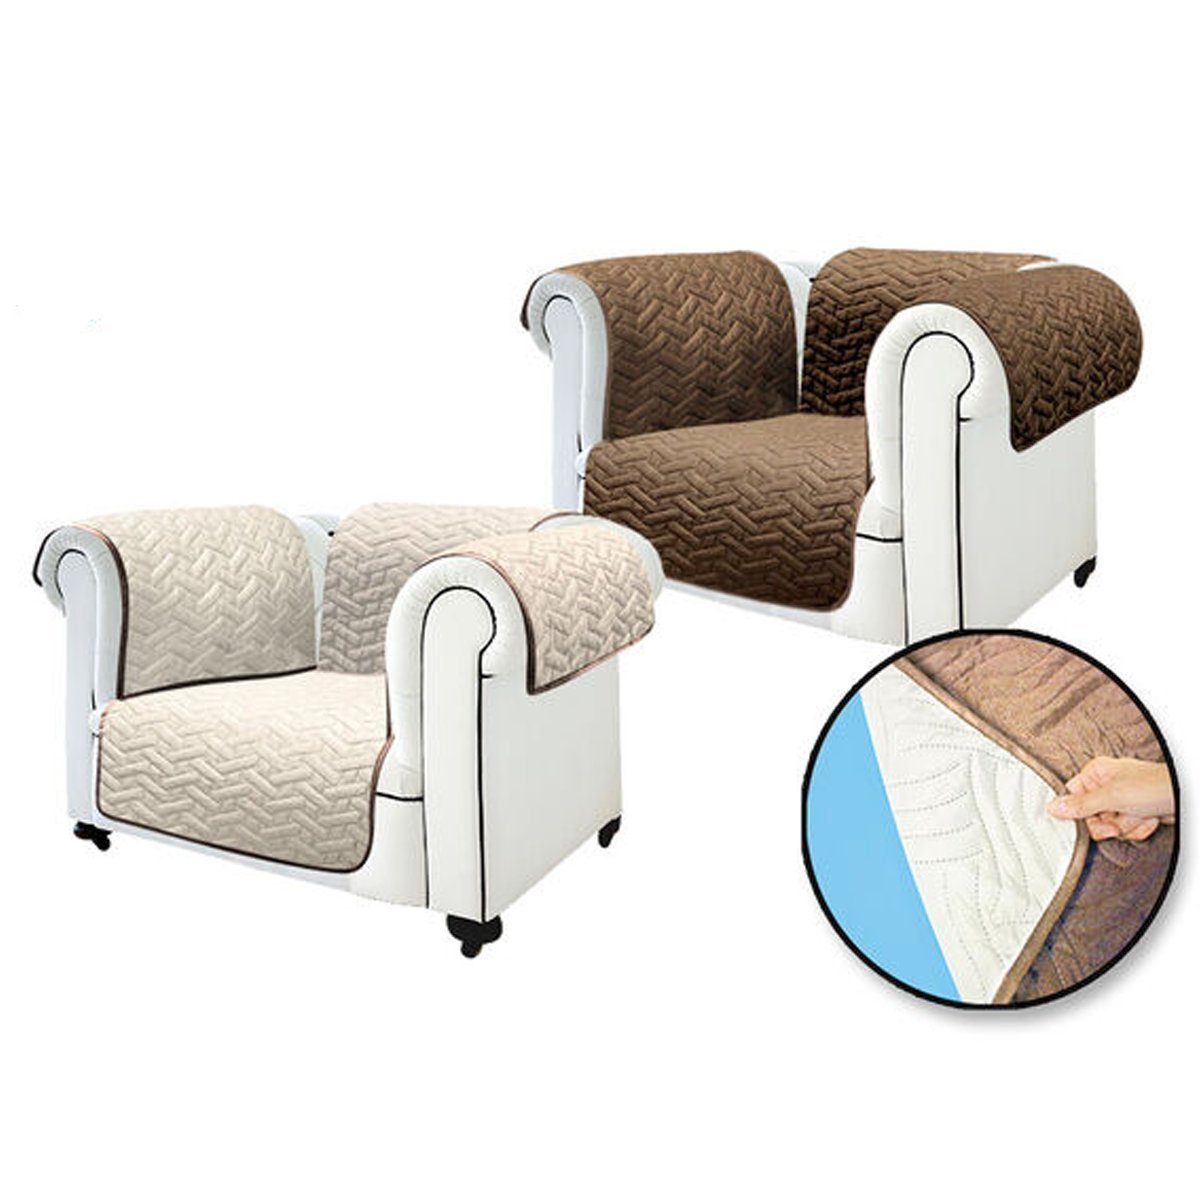 Sofaschoner Sofa Cover oder Sofabezug Starlyf, wasserabweisend, Sofahusse wendbar, Sesselbezug braun/beige